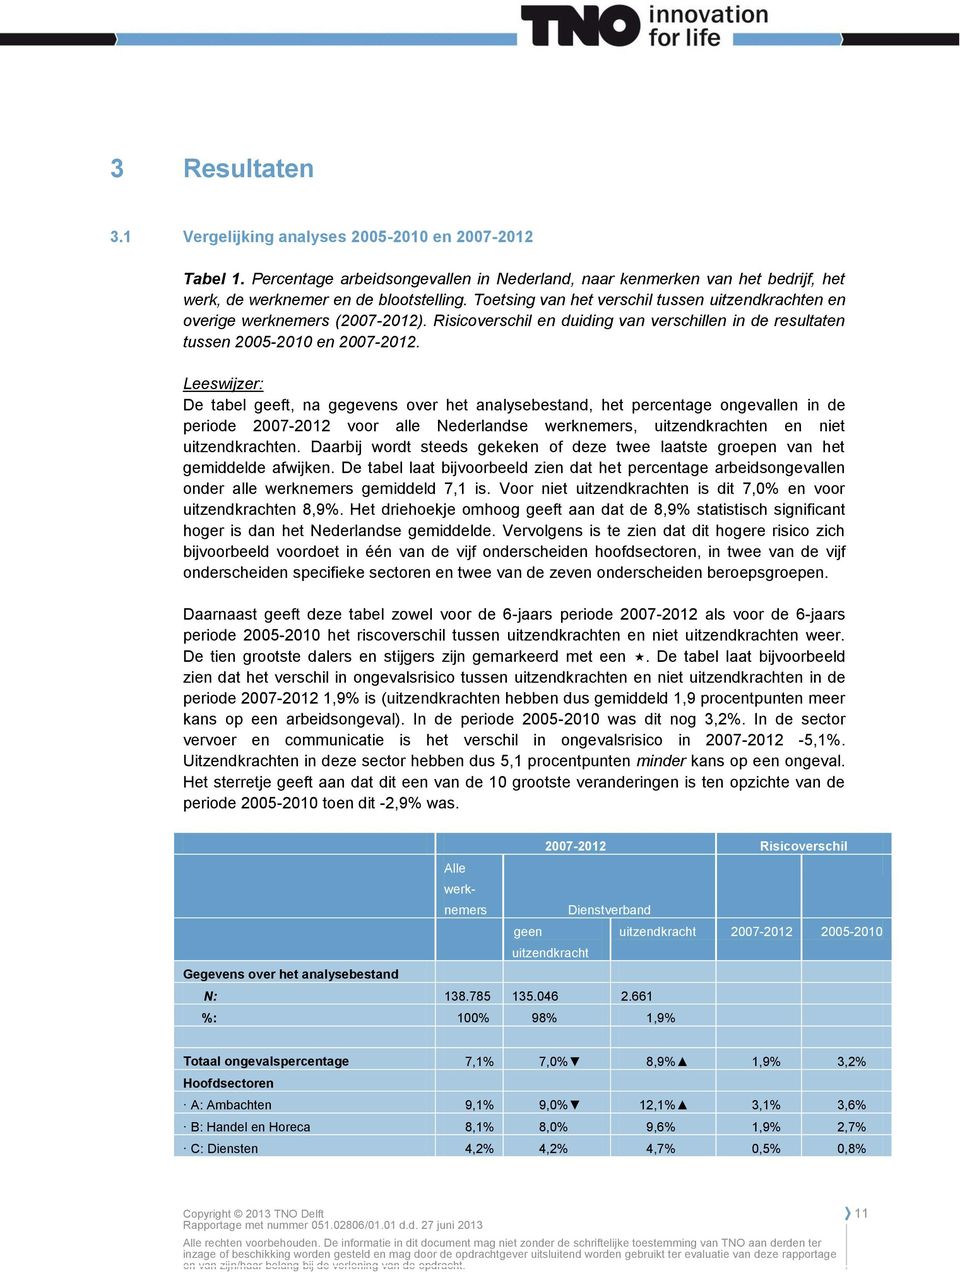 Leeswijzer: De tabel geeft, na gegevens over het analysebestand, het percentage ongevallen in de periode 2007-2012 voor alle Nederlandse werknemers, uitzendkrachten en niet uitzendkrachten.